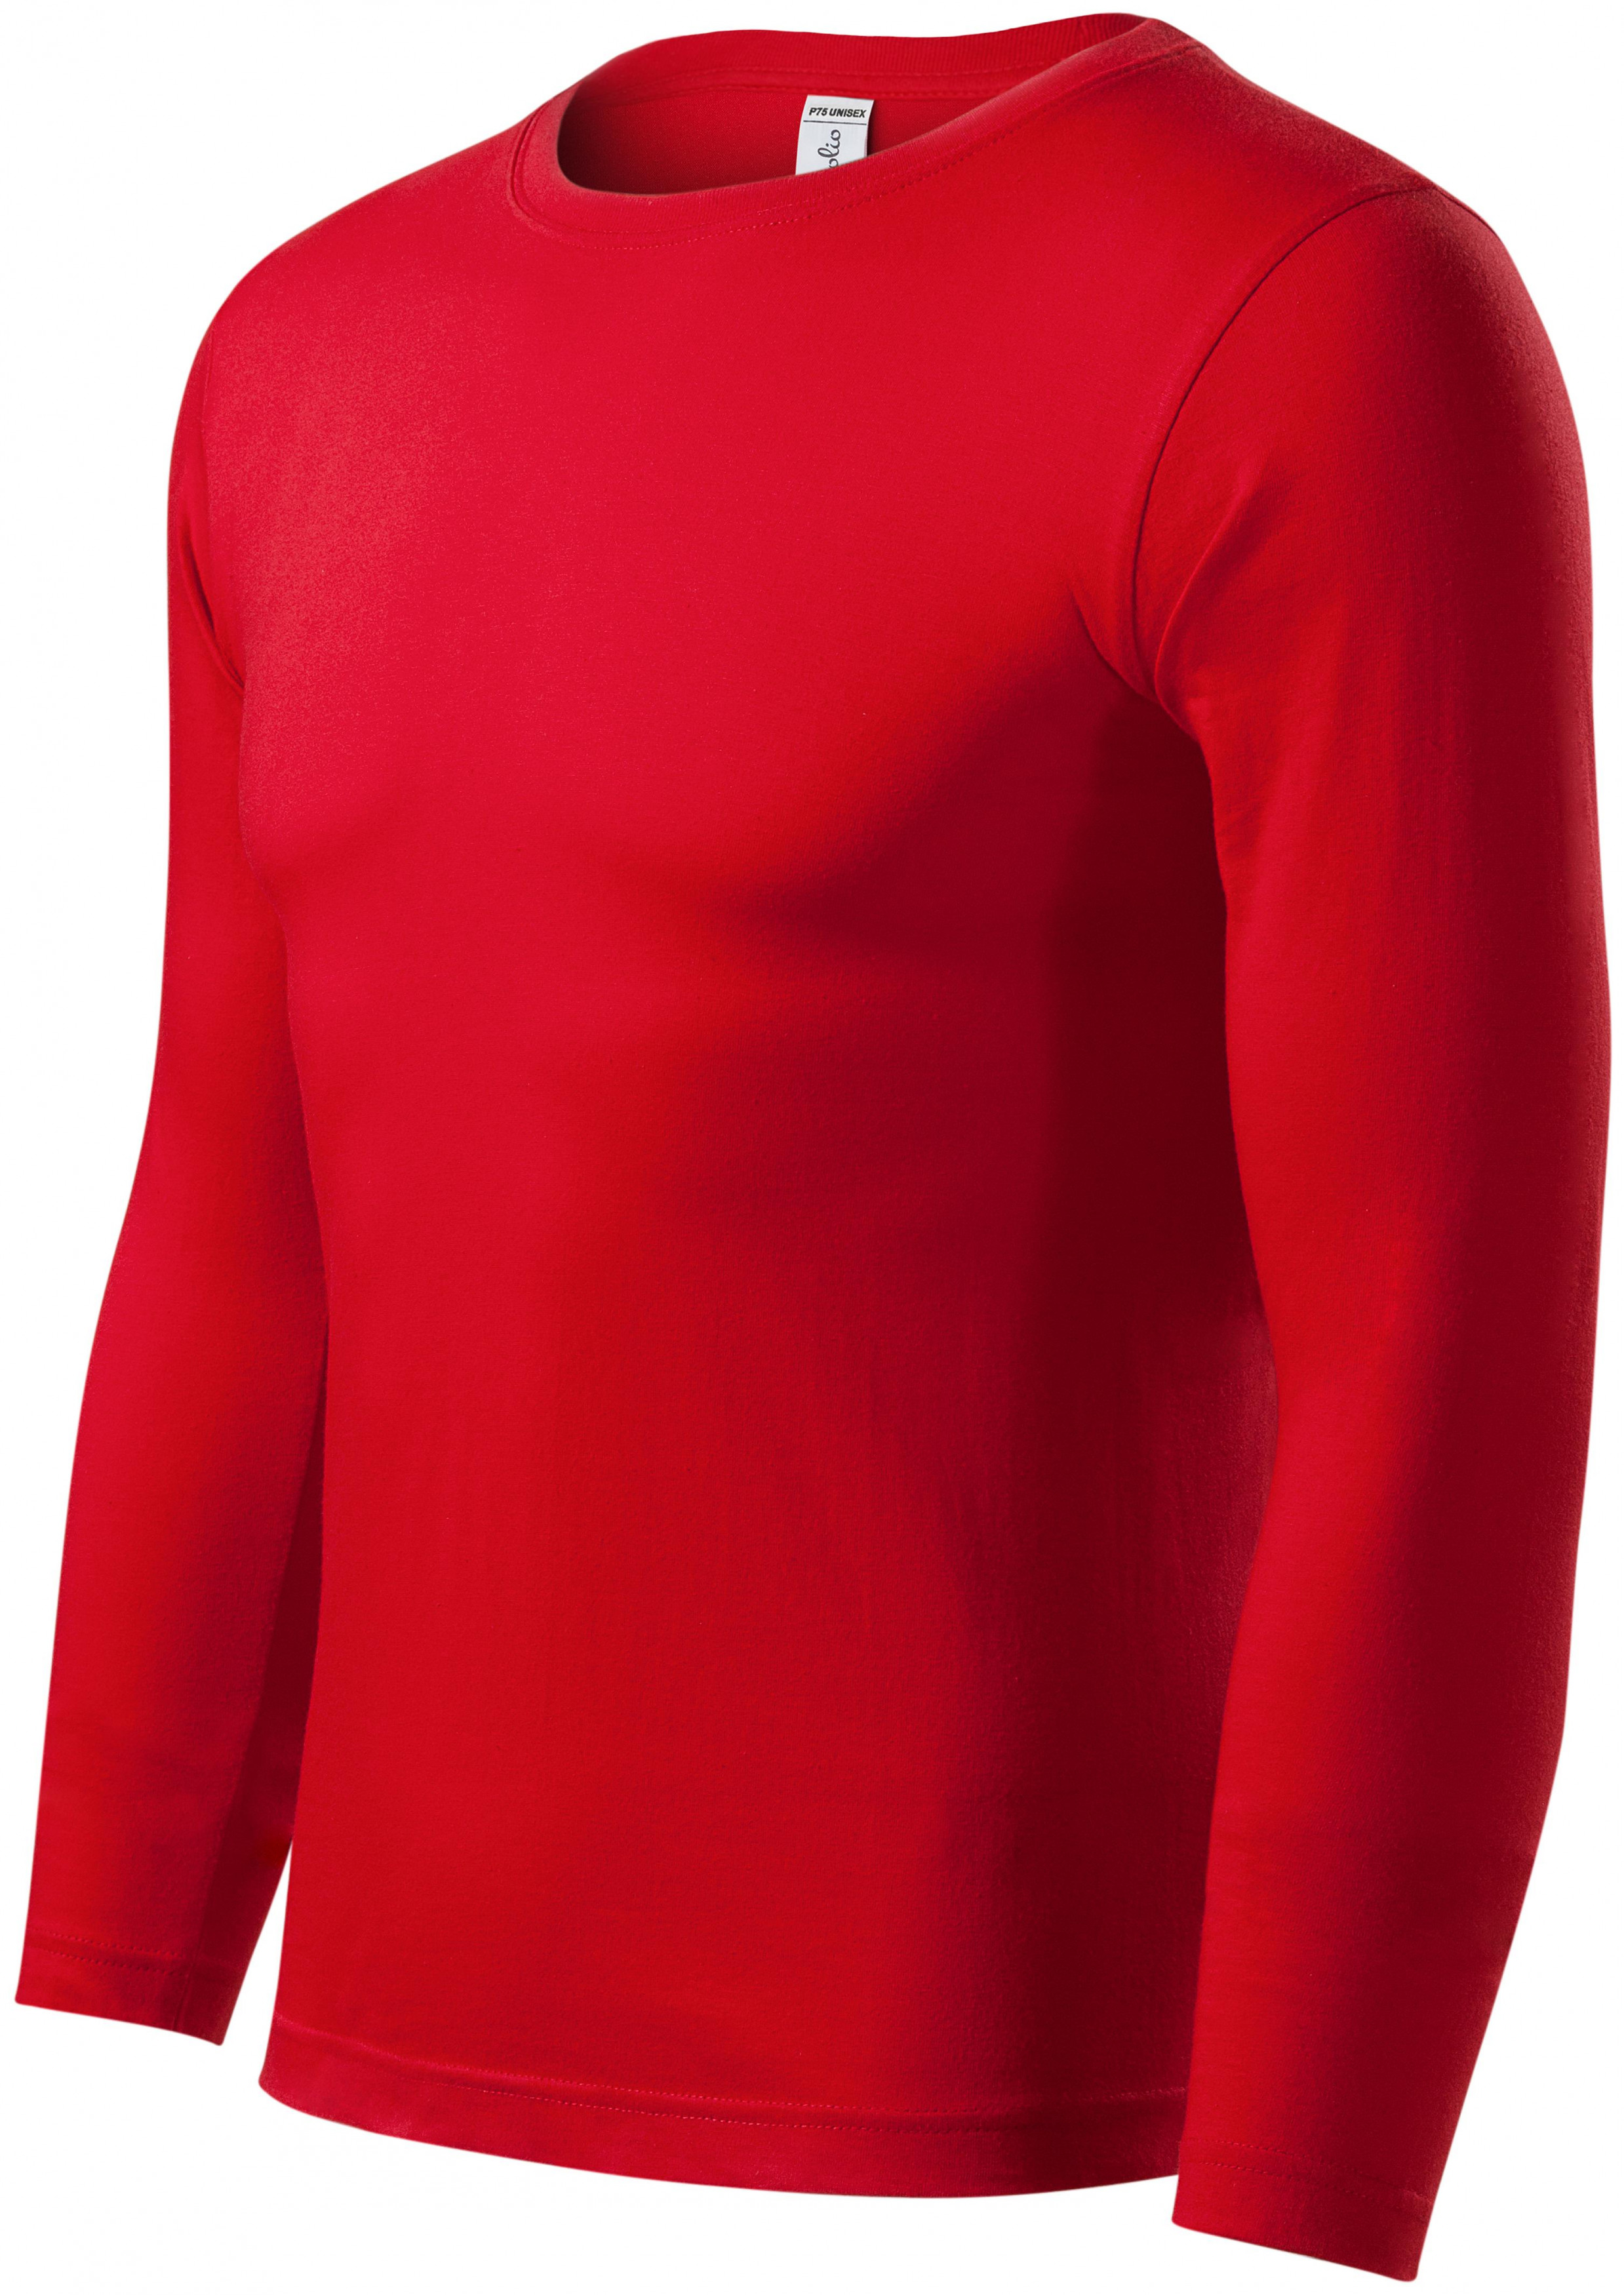 Tričko s dlhým rukávom, ľahšie, červená, XS